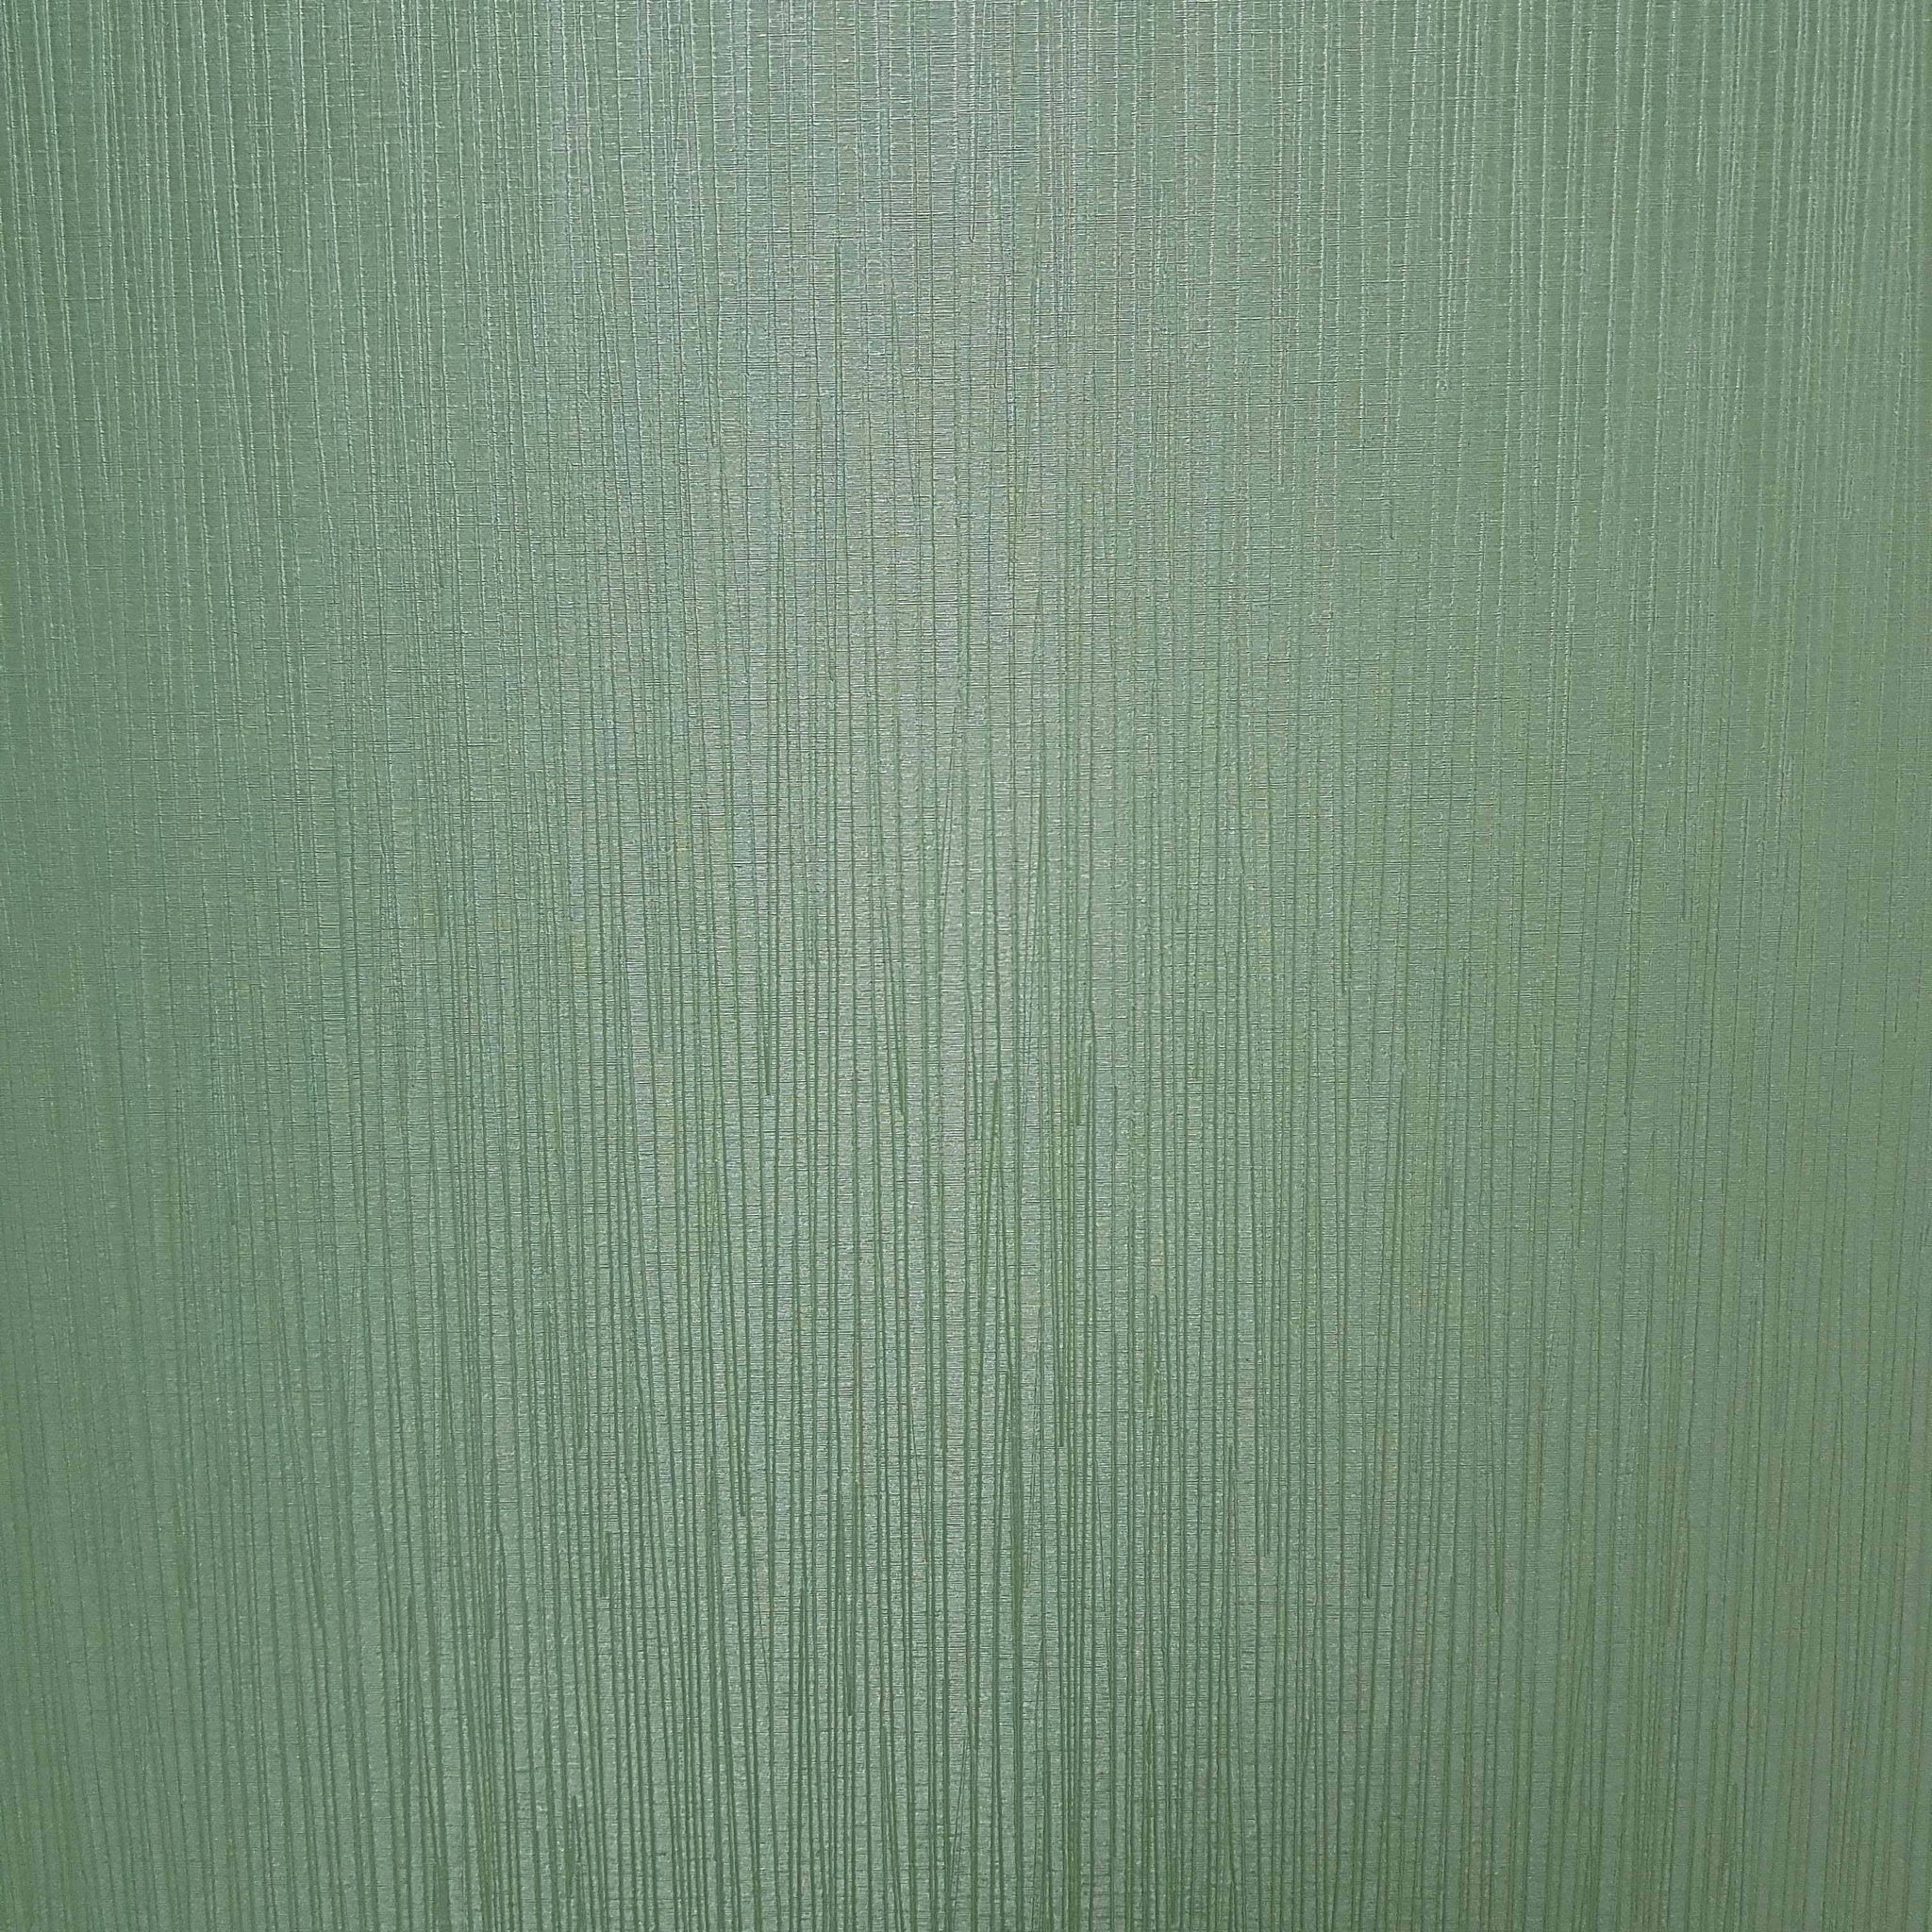 Forest Green Sheen Linear Decorative Wall Panels 2550mm x 500mm x 9mm (Pack of 2) - Claddtech